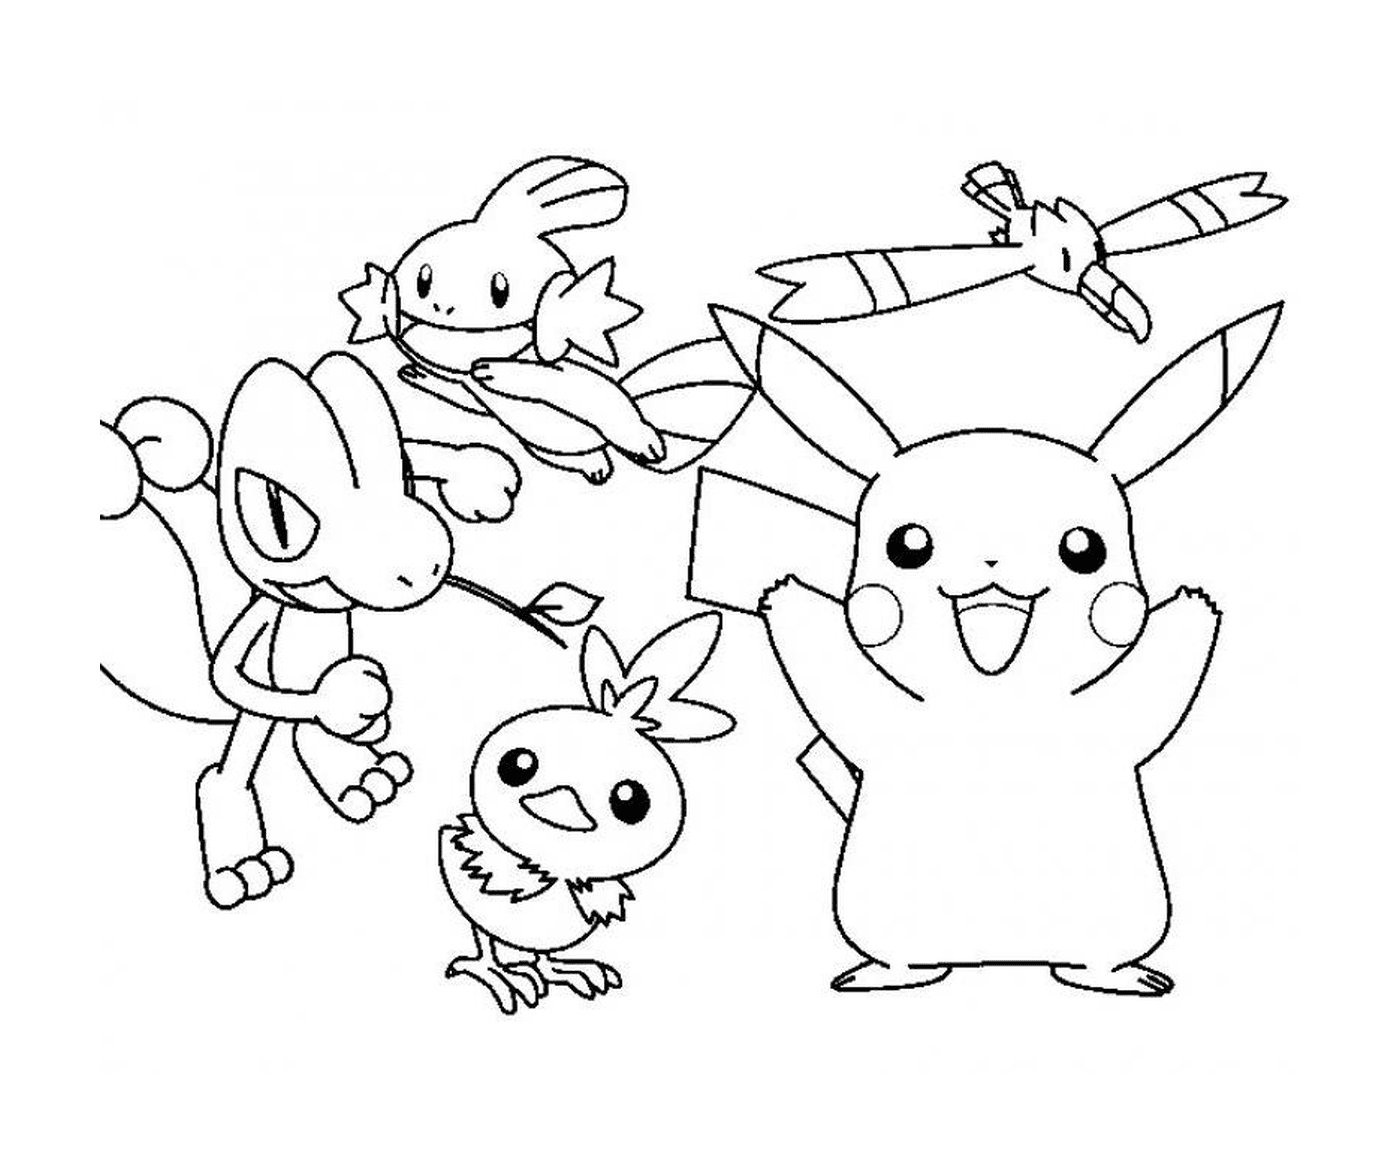  Eine Gruppe von Pokémons in Aktion 